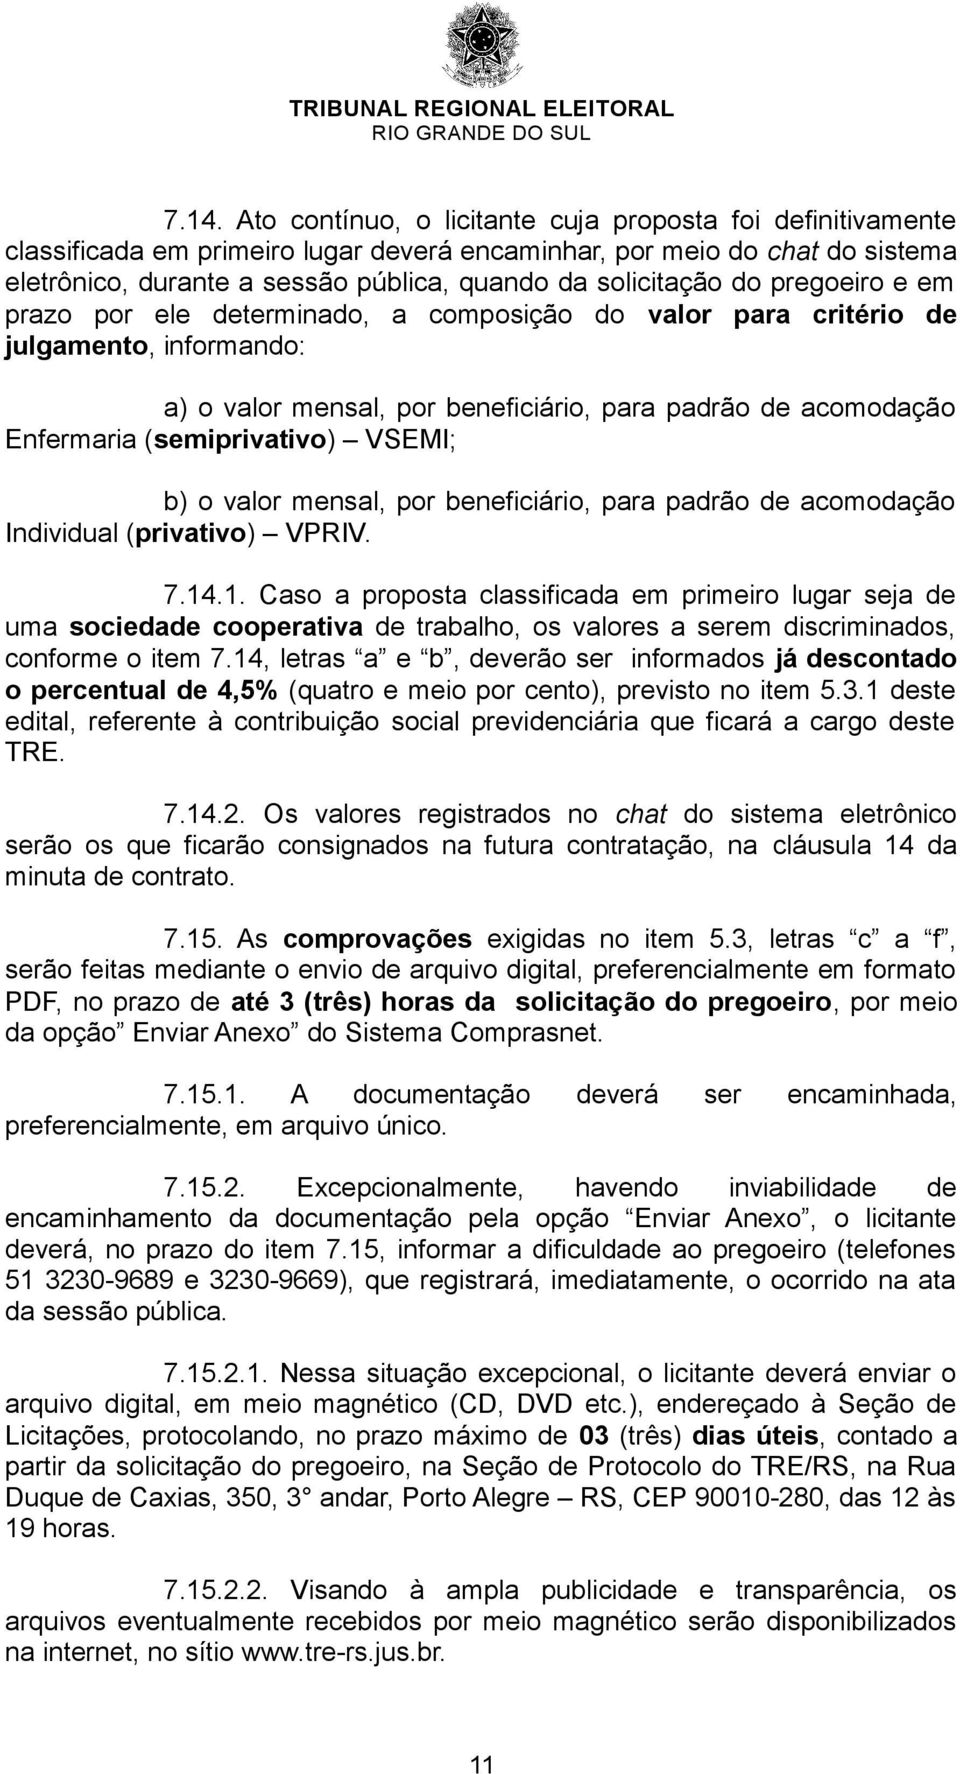 (semiprivativo) VSEMI; b) o valor mensal, por beneficiário, para padrão de acomodação Individual (privativo) VPRIV. 7.14